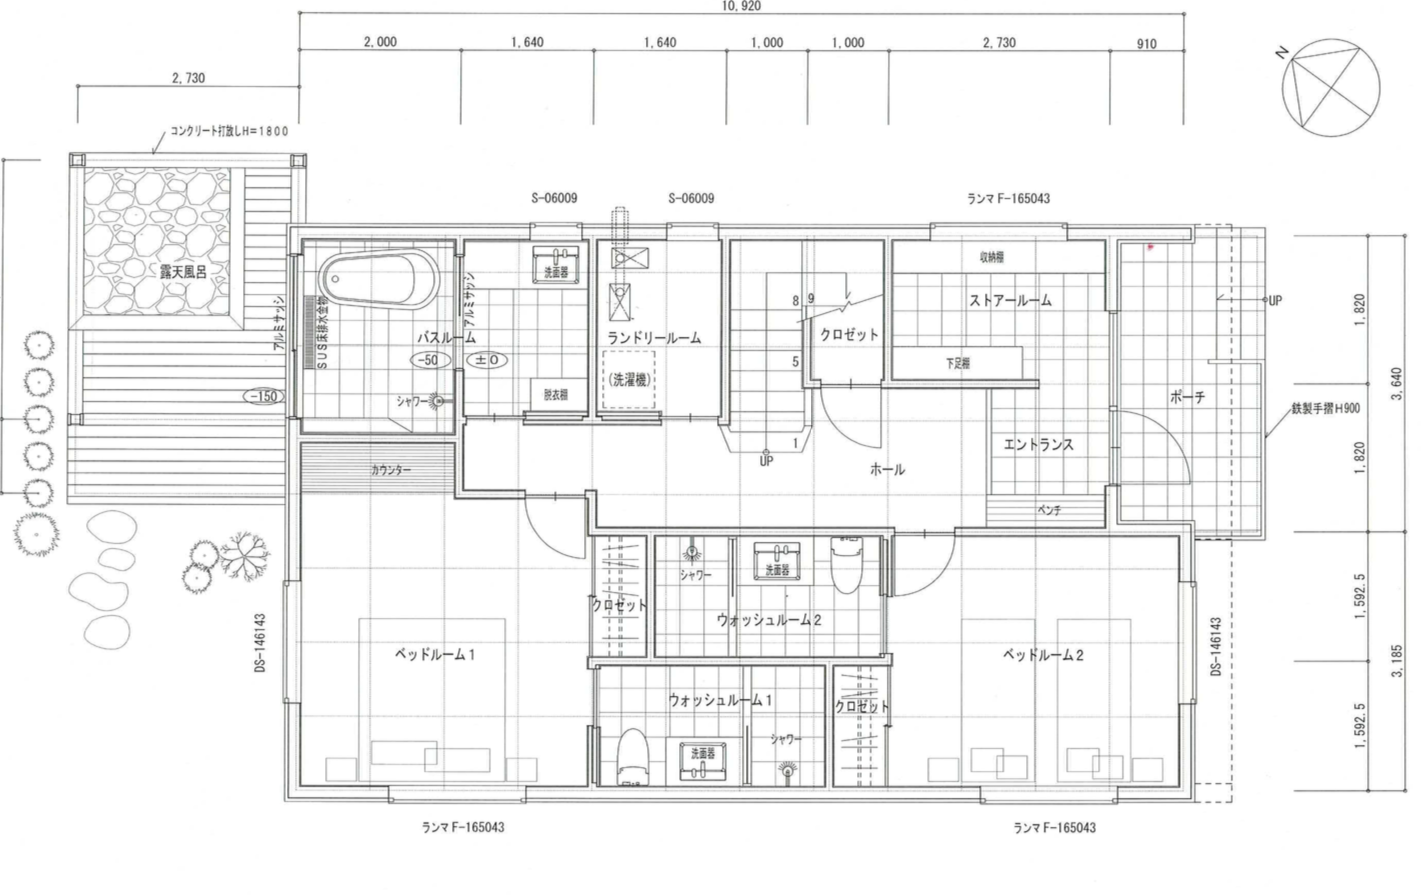  Moraine Chalet Niseko floor plan1